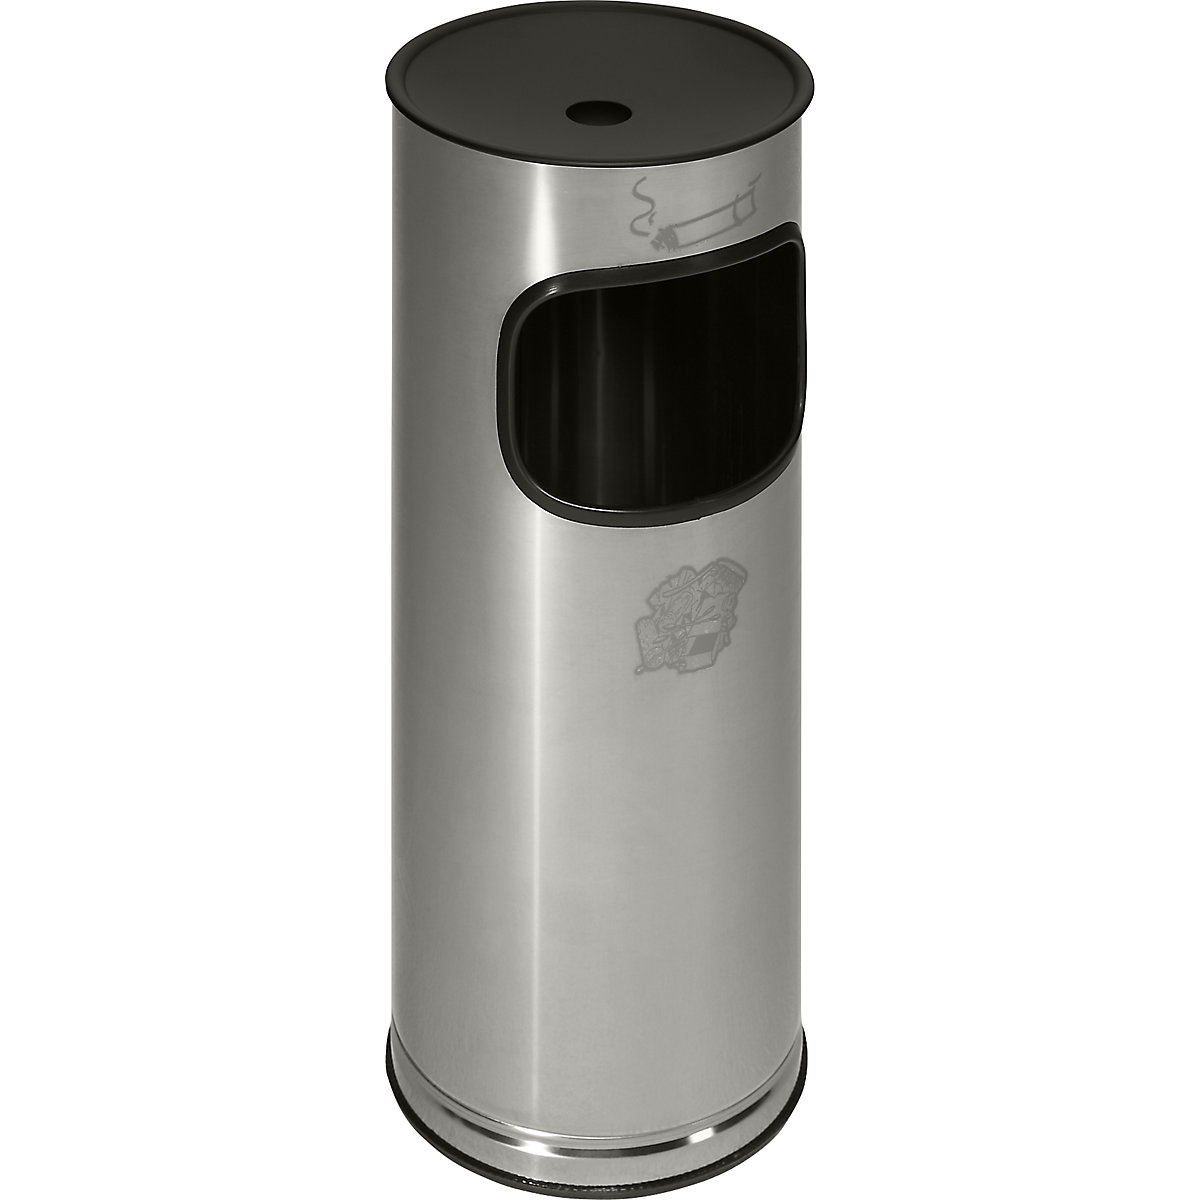 VAR – Bezpečnostní kombinovaný popelník, ušlechtilá ocel, objem 17 l, v x Ø 610 x 250 mm, ušlechtilá ocel